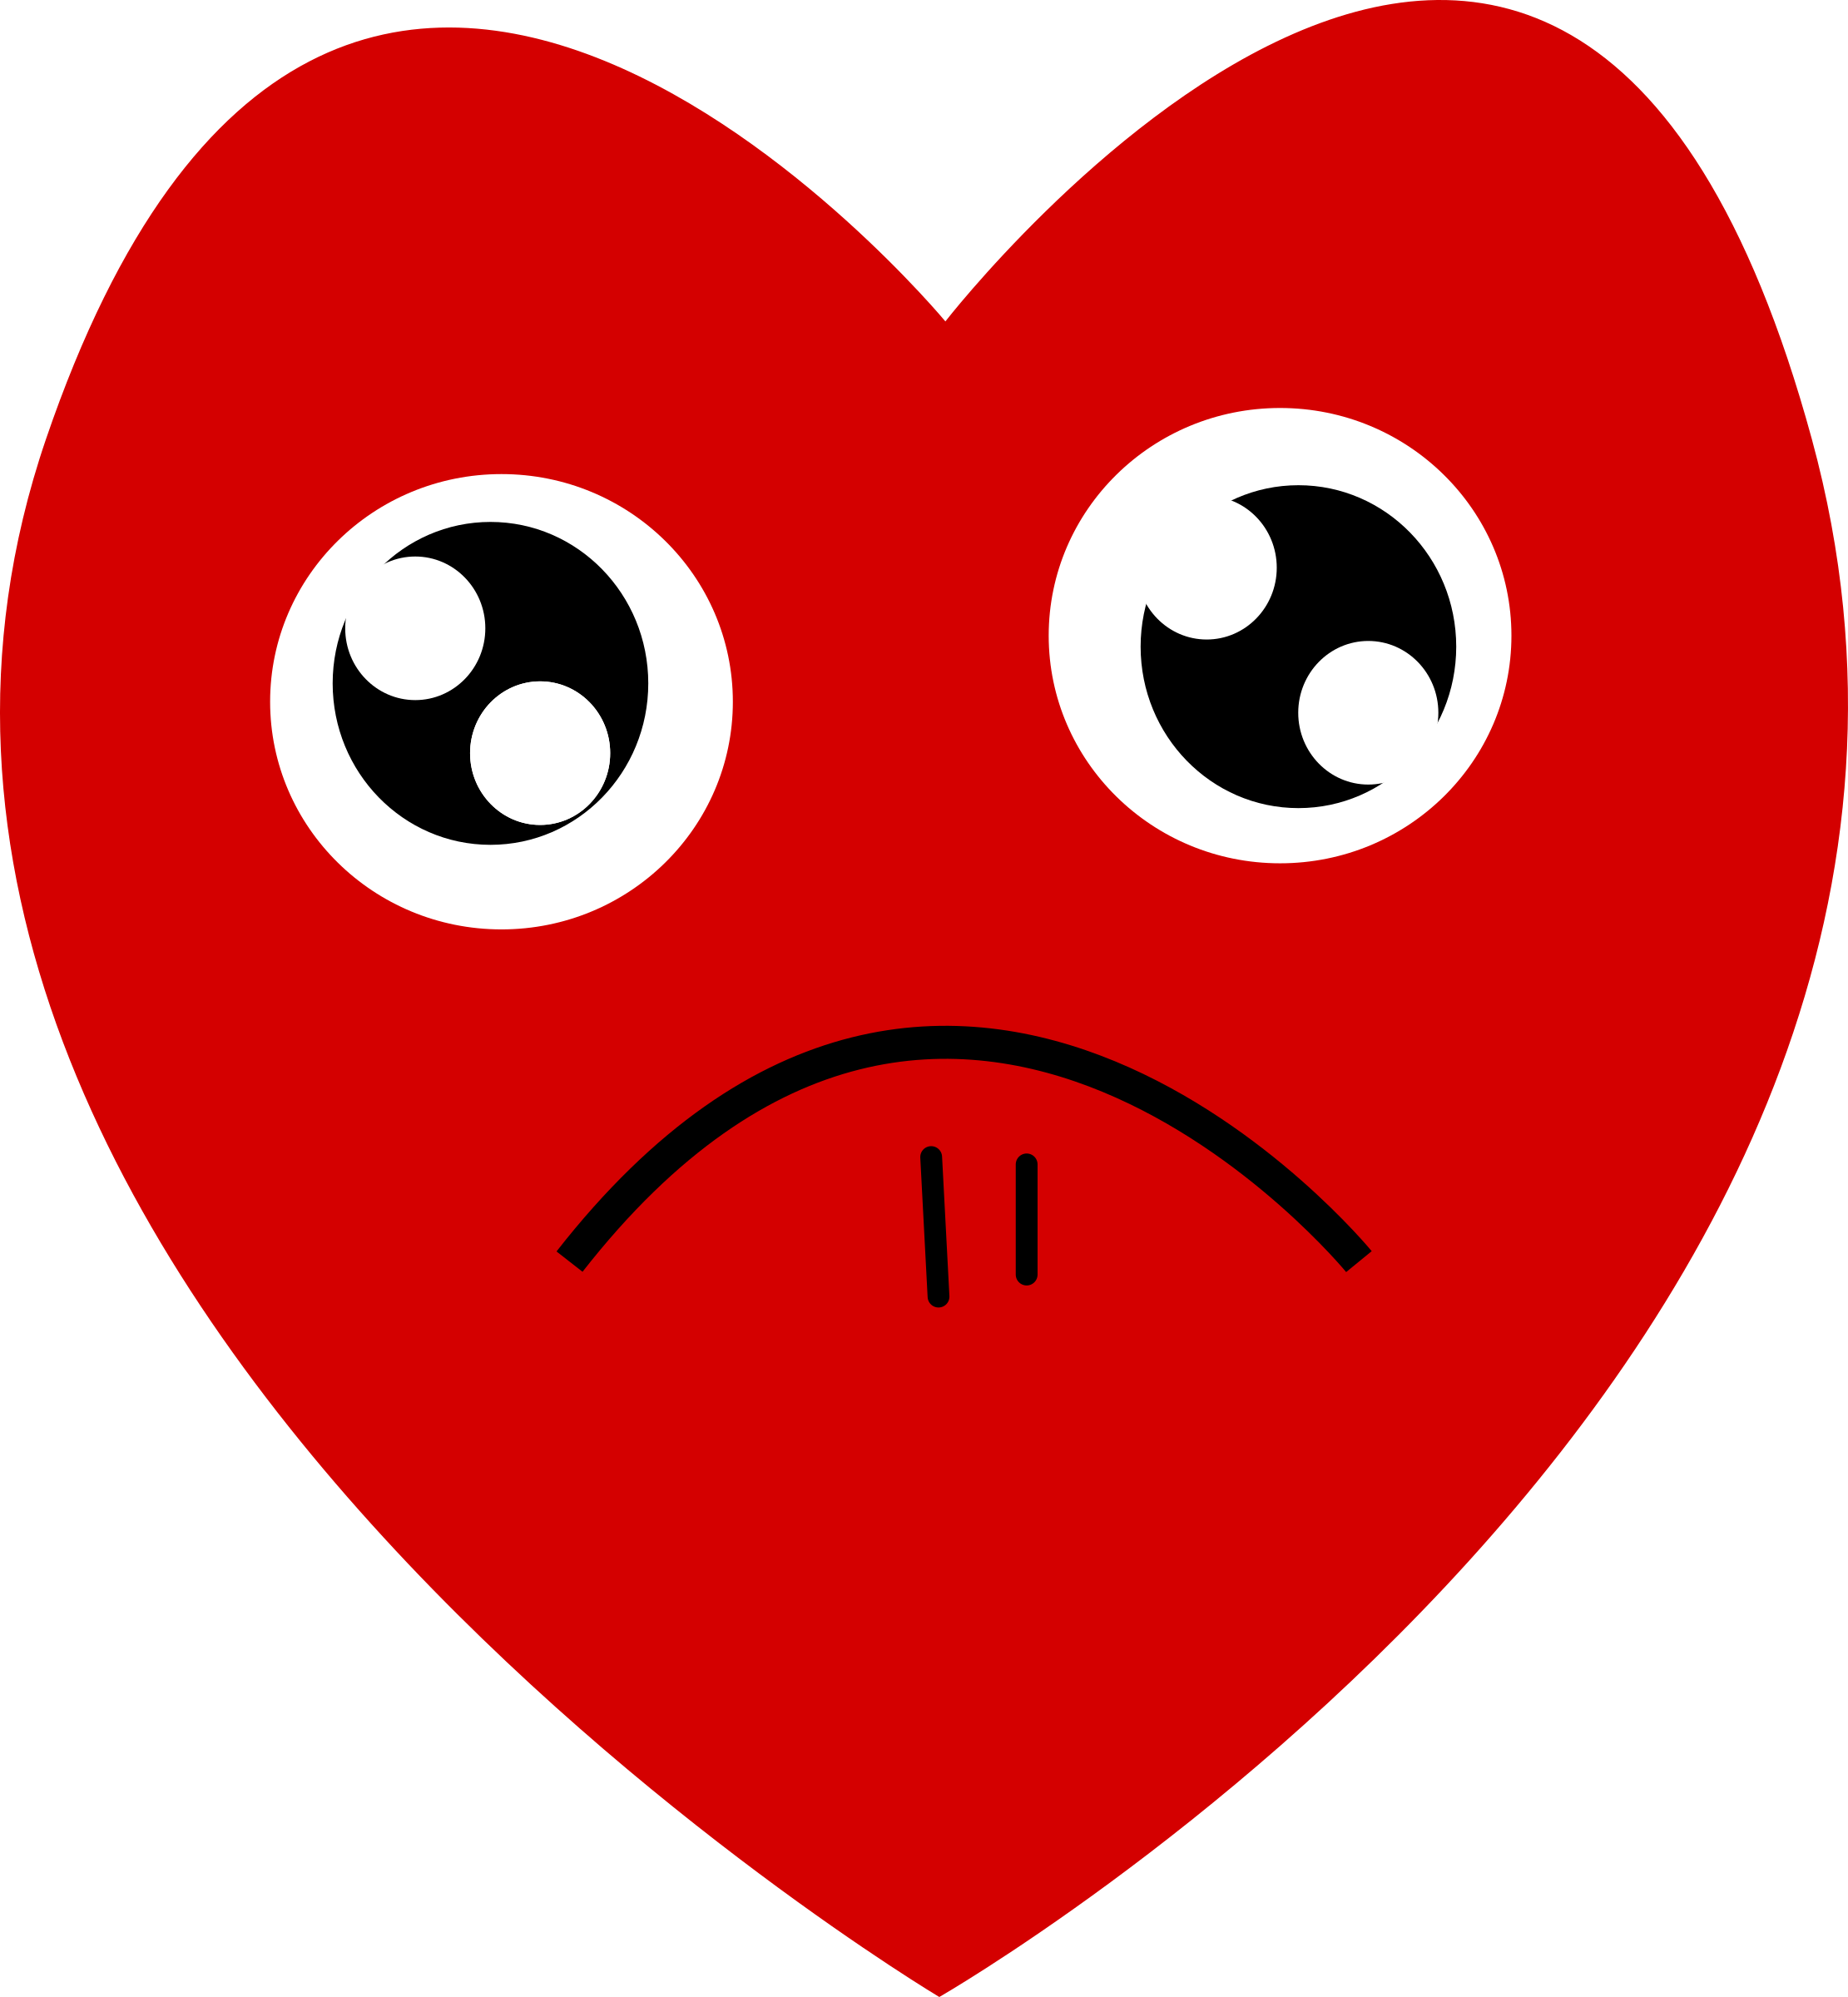 A Heart With A Sad Face